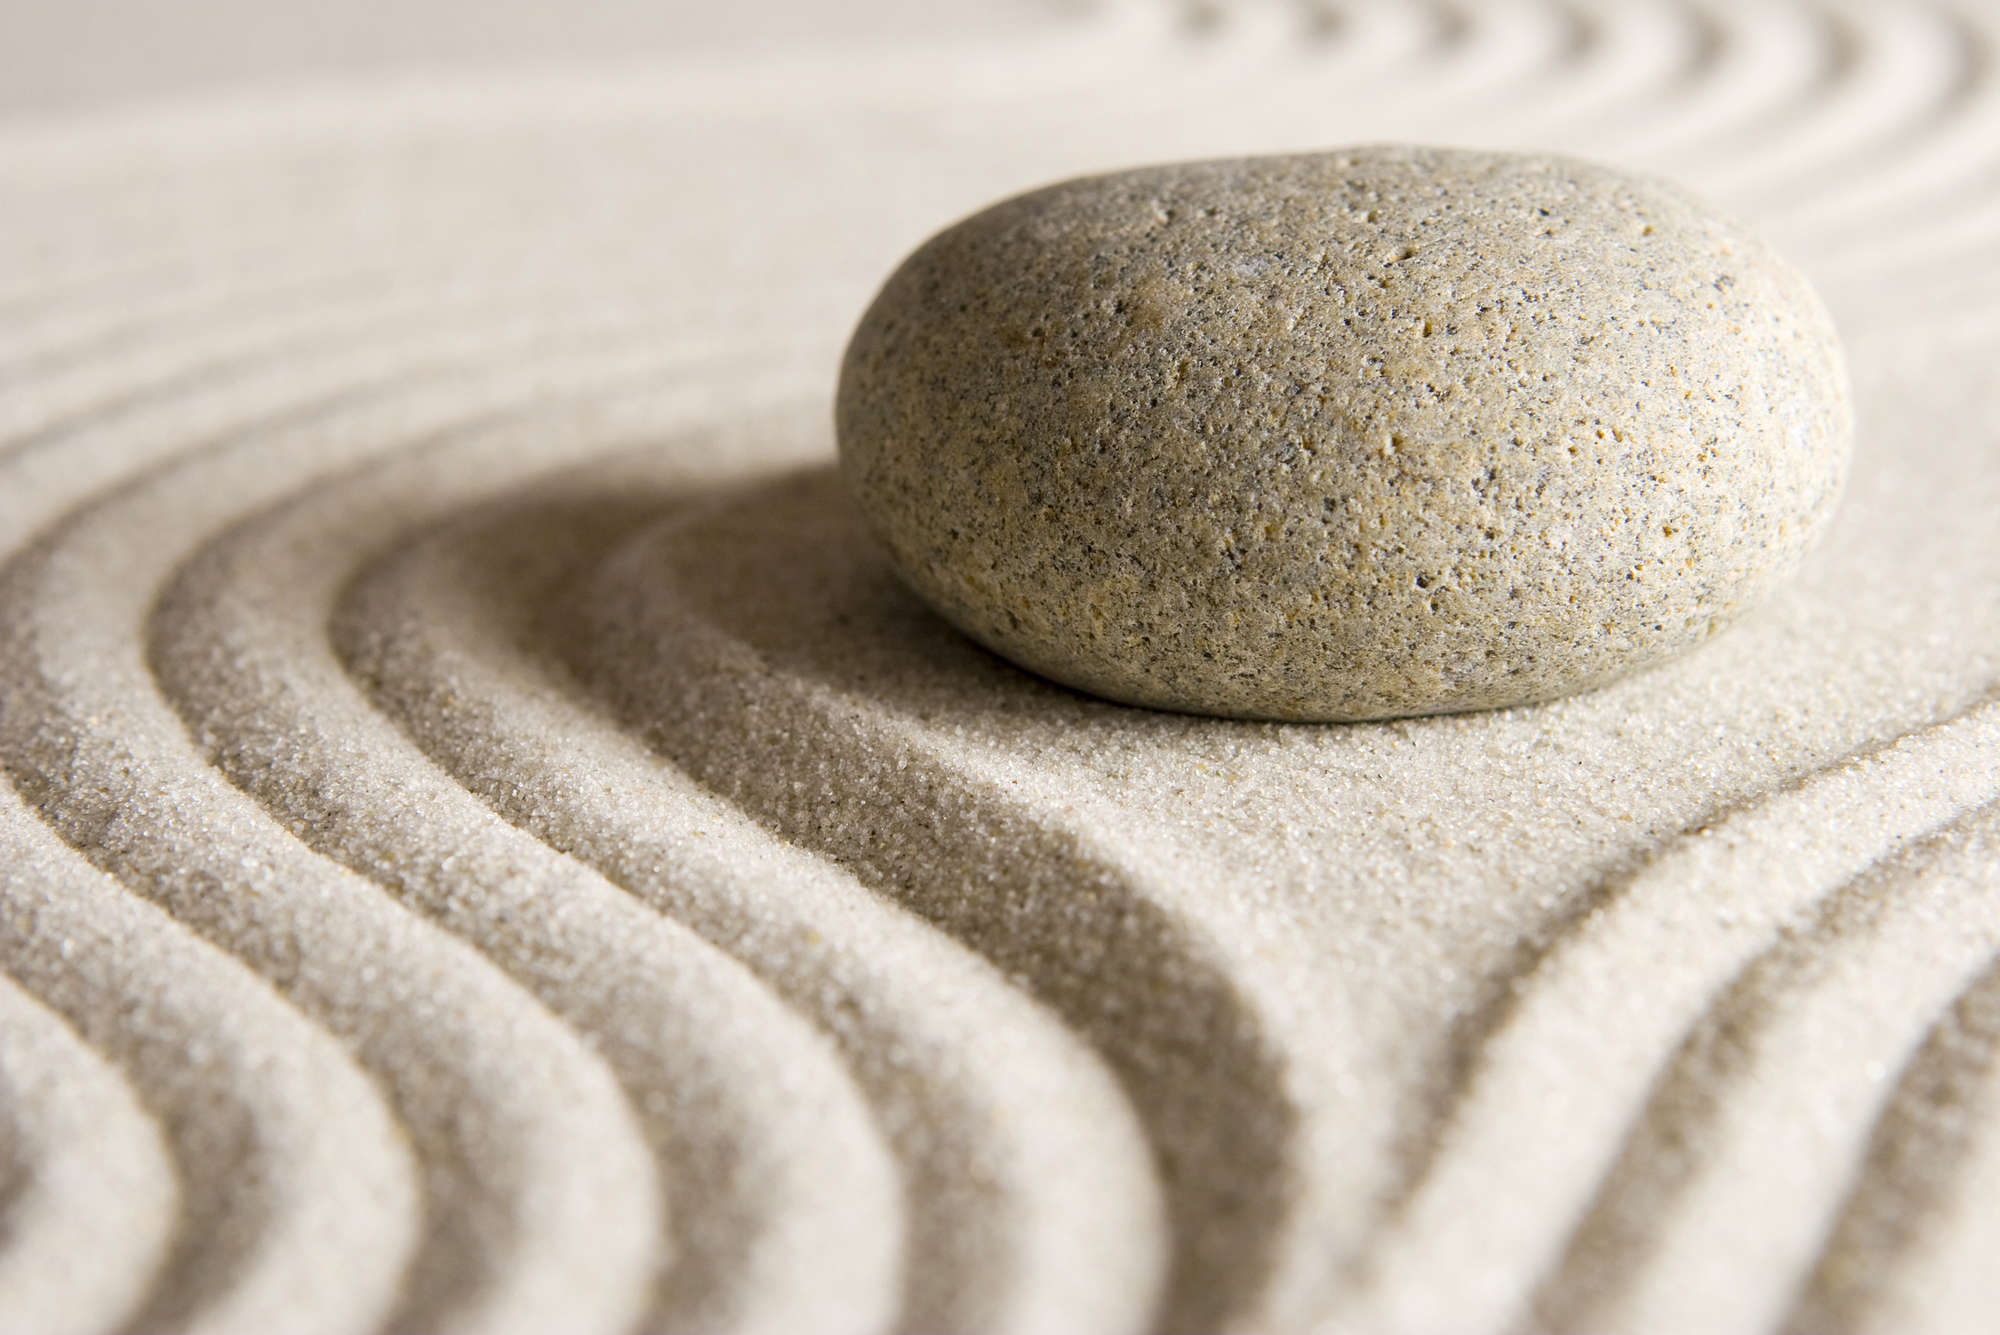             Fotomural Patrón en la arena con piedra - Material sin tejer con textura
        